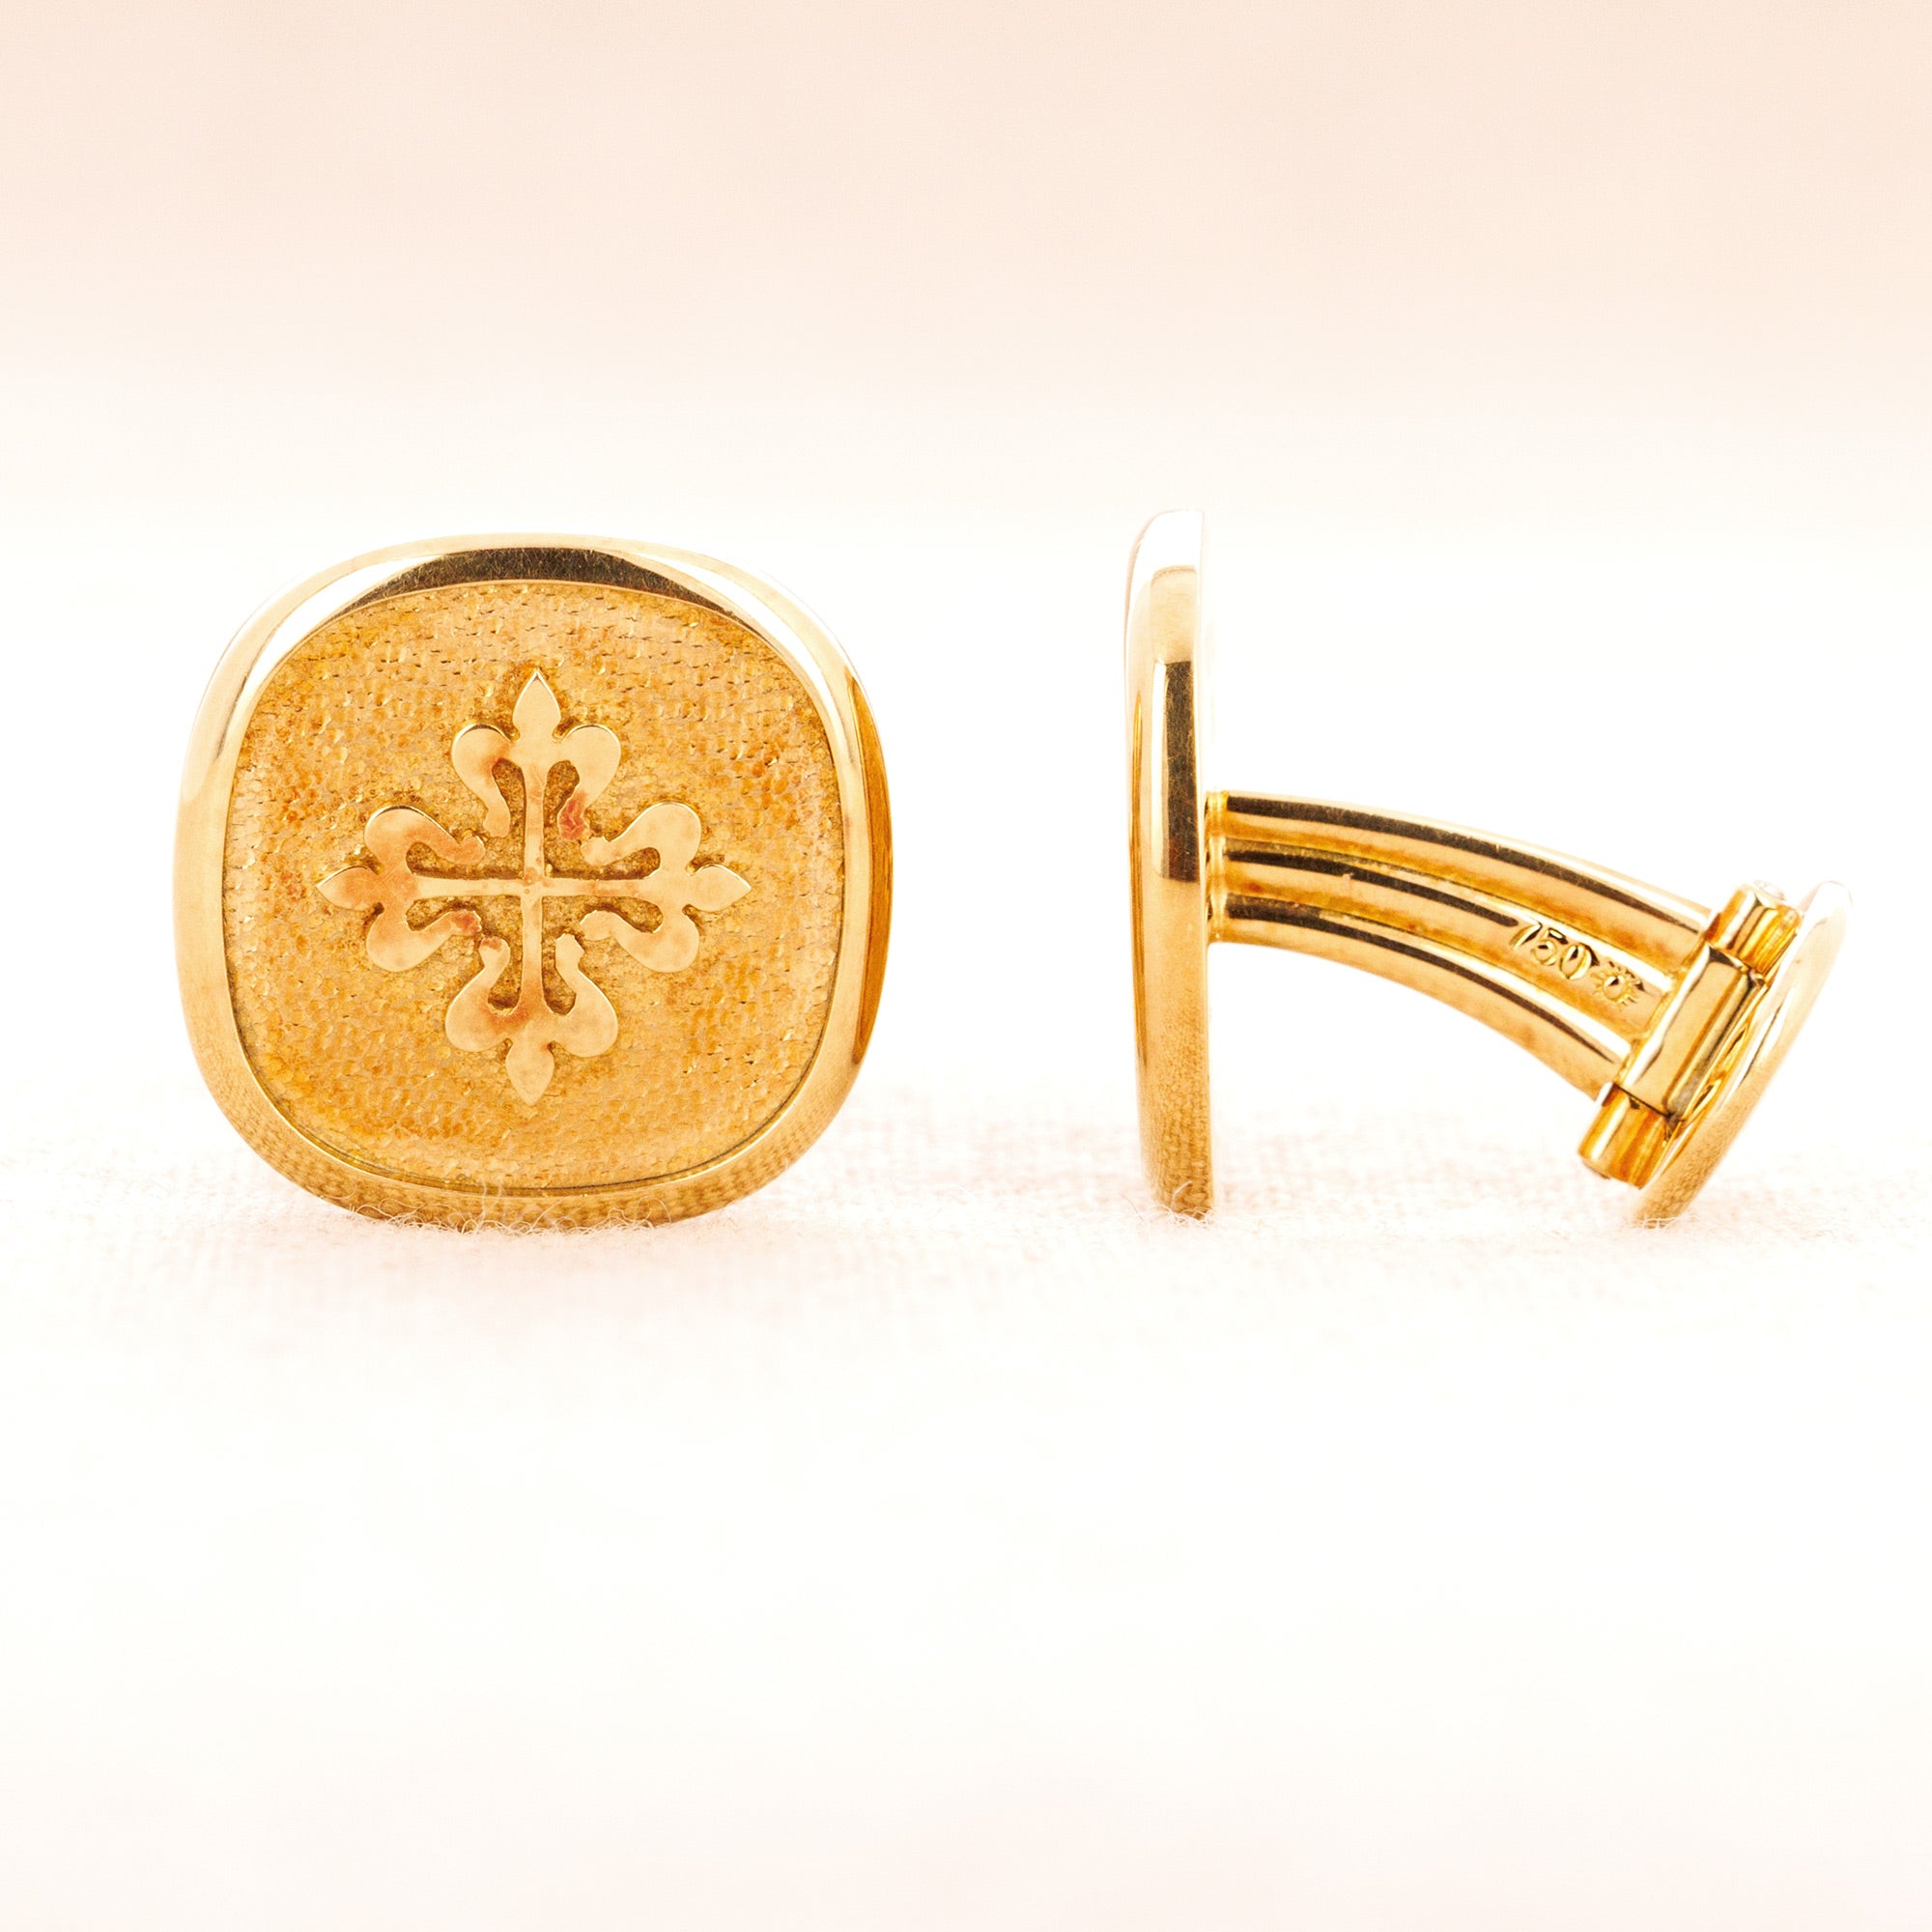 Patek Philippe - Patek Philippe Yellow Gold Logo Cufflinks - The Keystone Watches